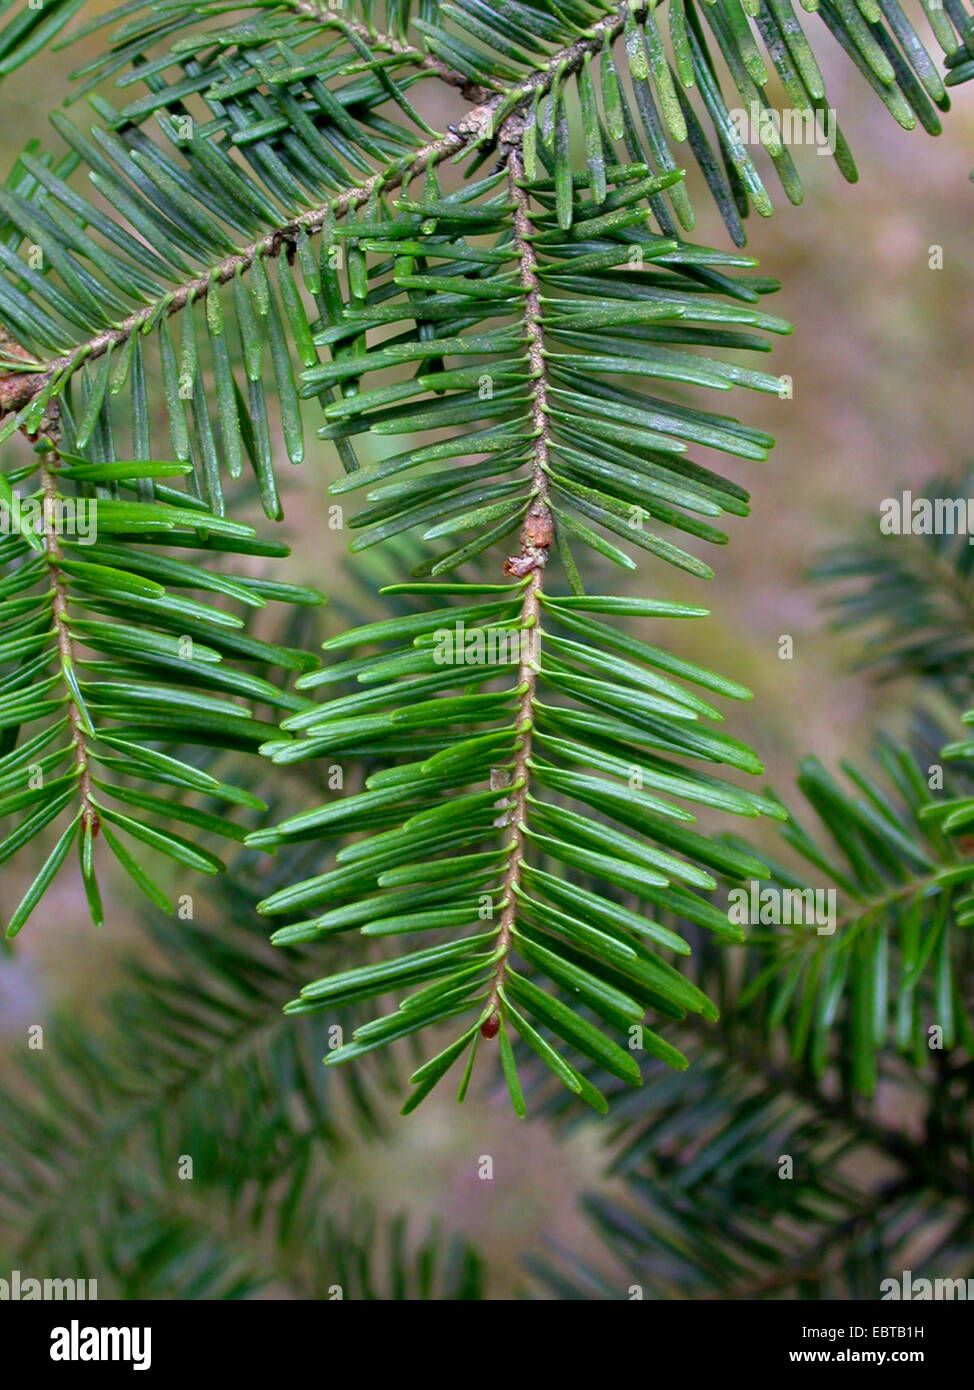 balsam fir (Abies balsamea), branch Stock Photo